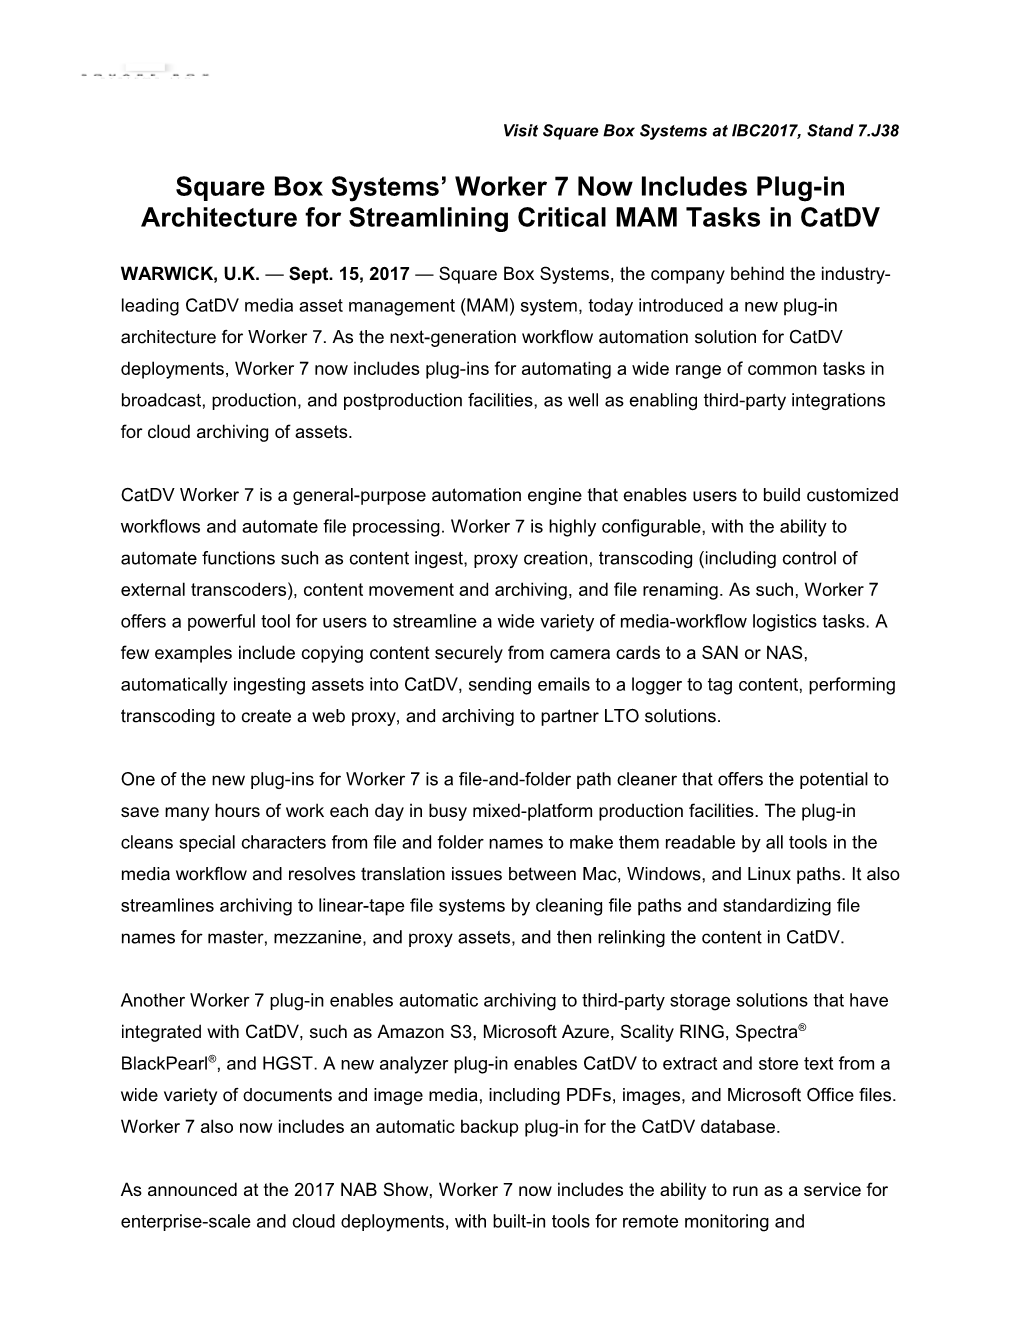 Square Box Systems Press Release